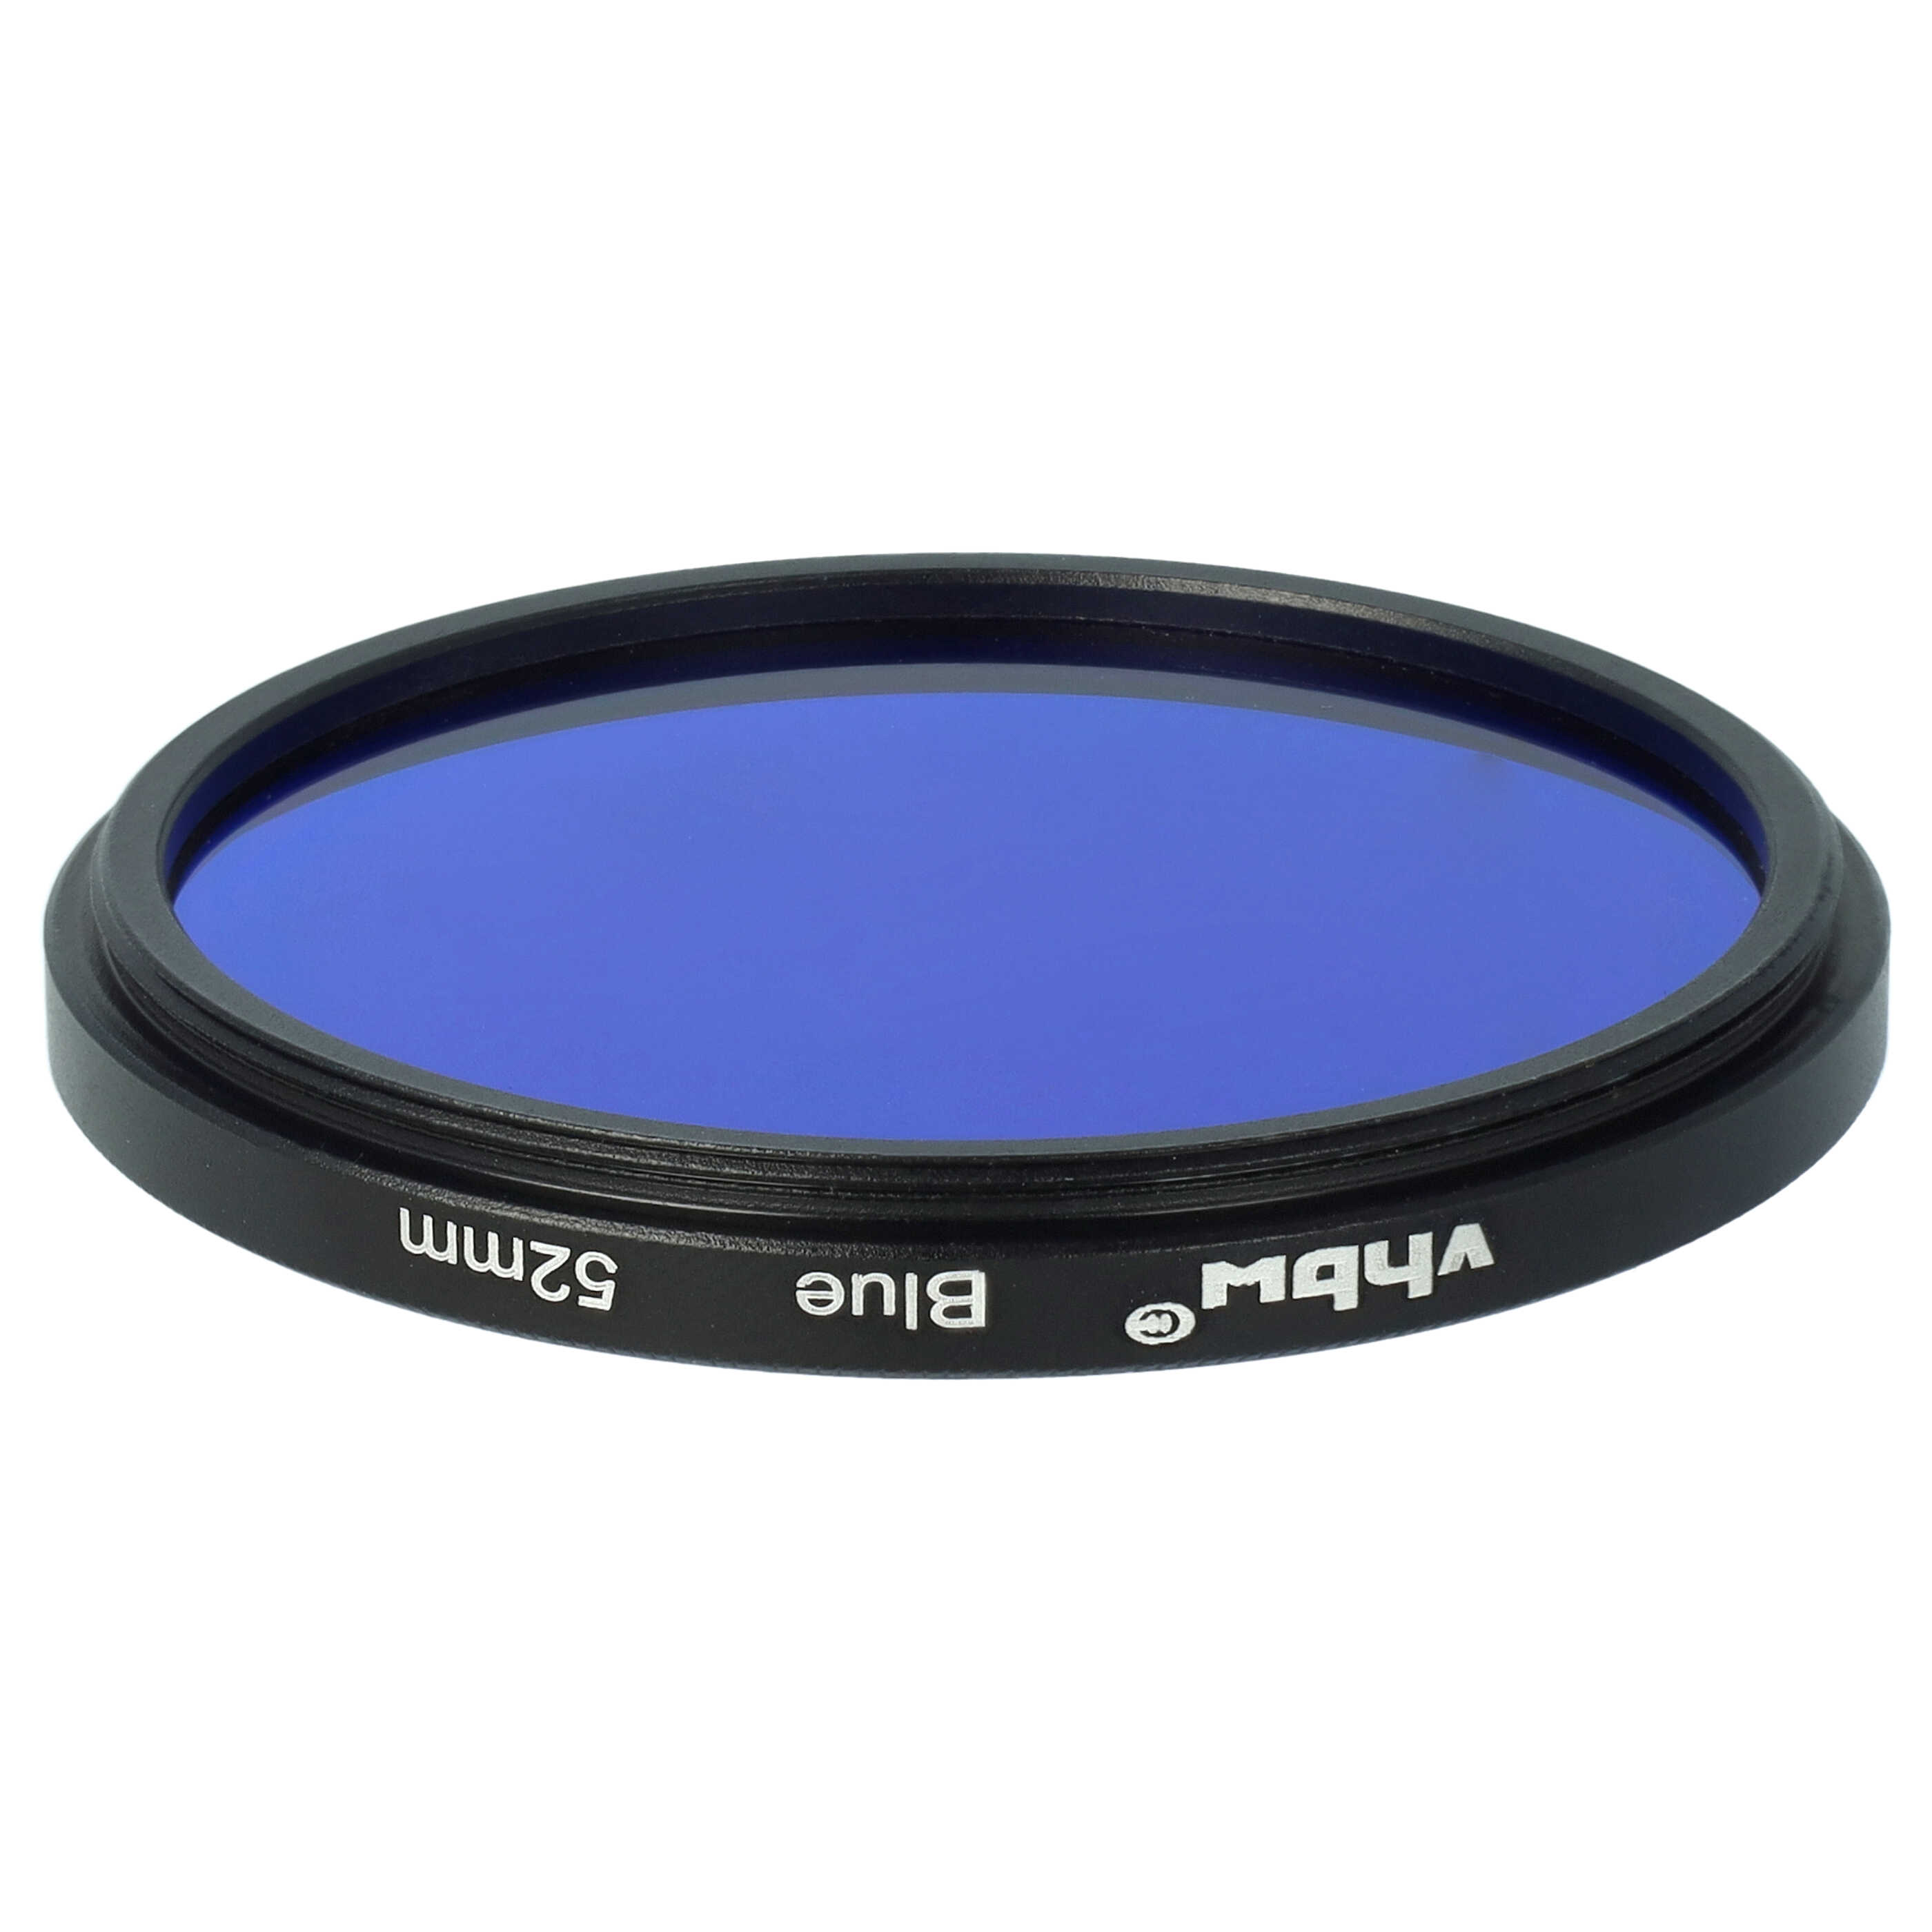 Filtro colorato per obiettivi fotocamera con filettatura da 52 mm - filtro blu